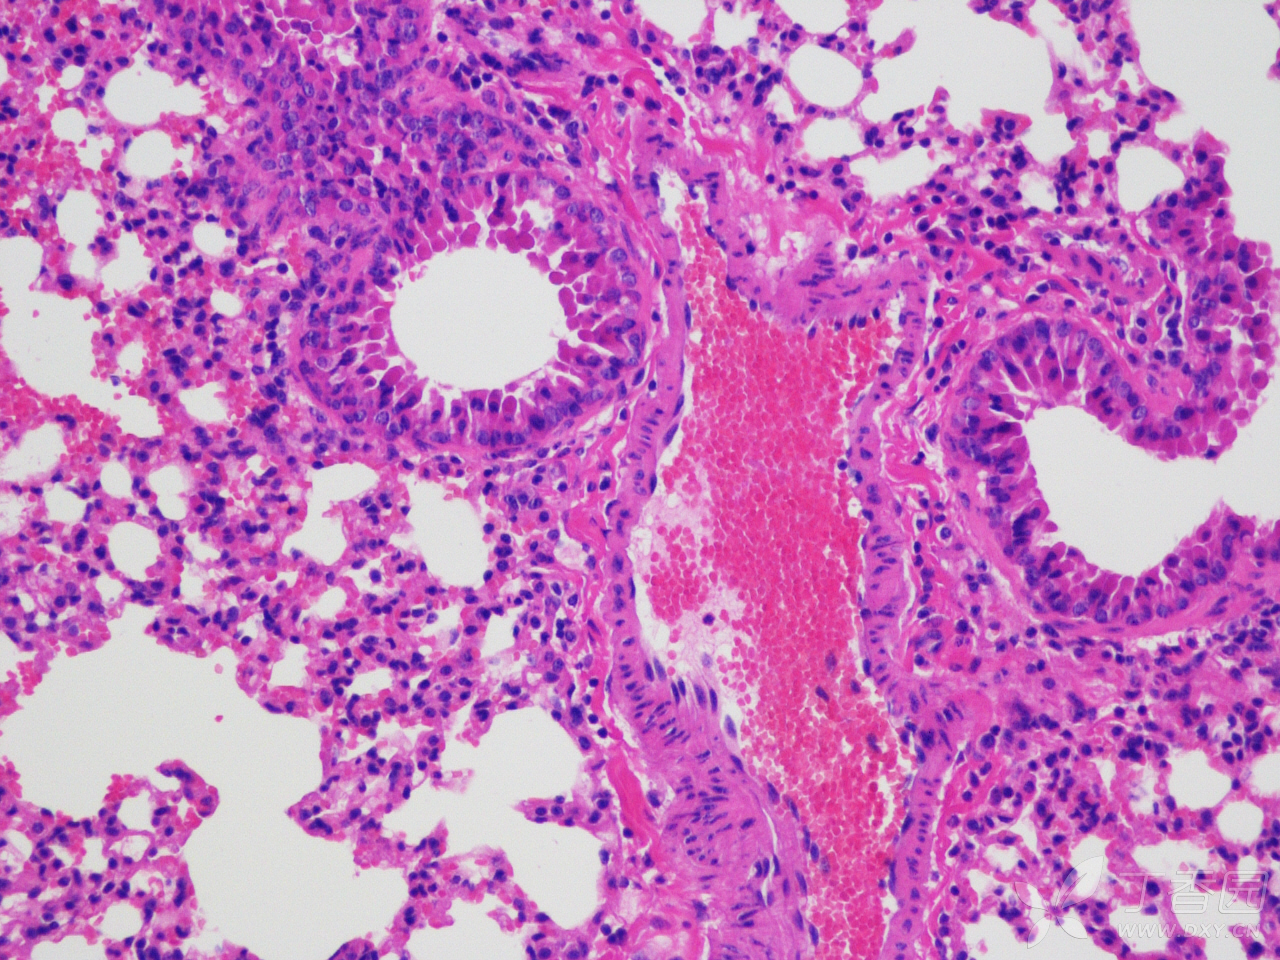 小鼠肝脏HE染色病理切片分析 - 生理生化与组织胚胎 -丁香园论坛